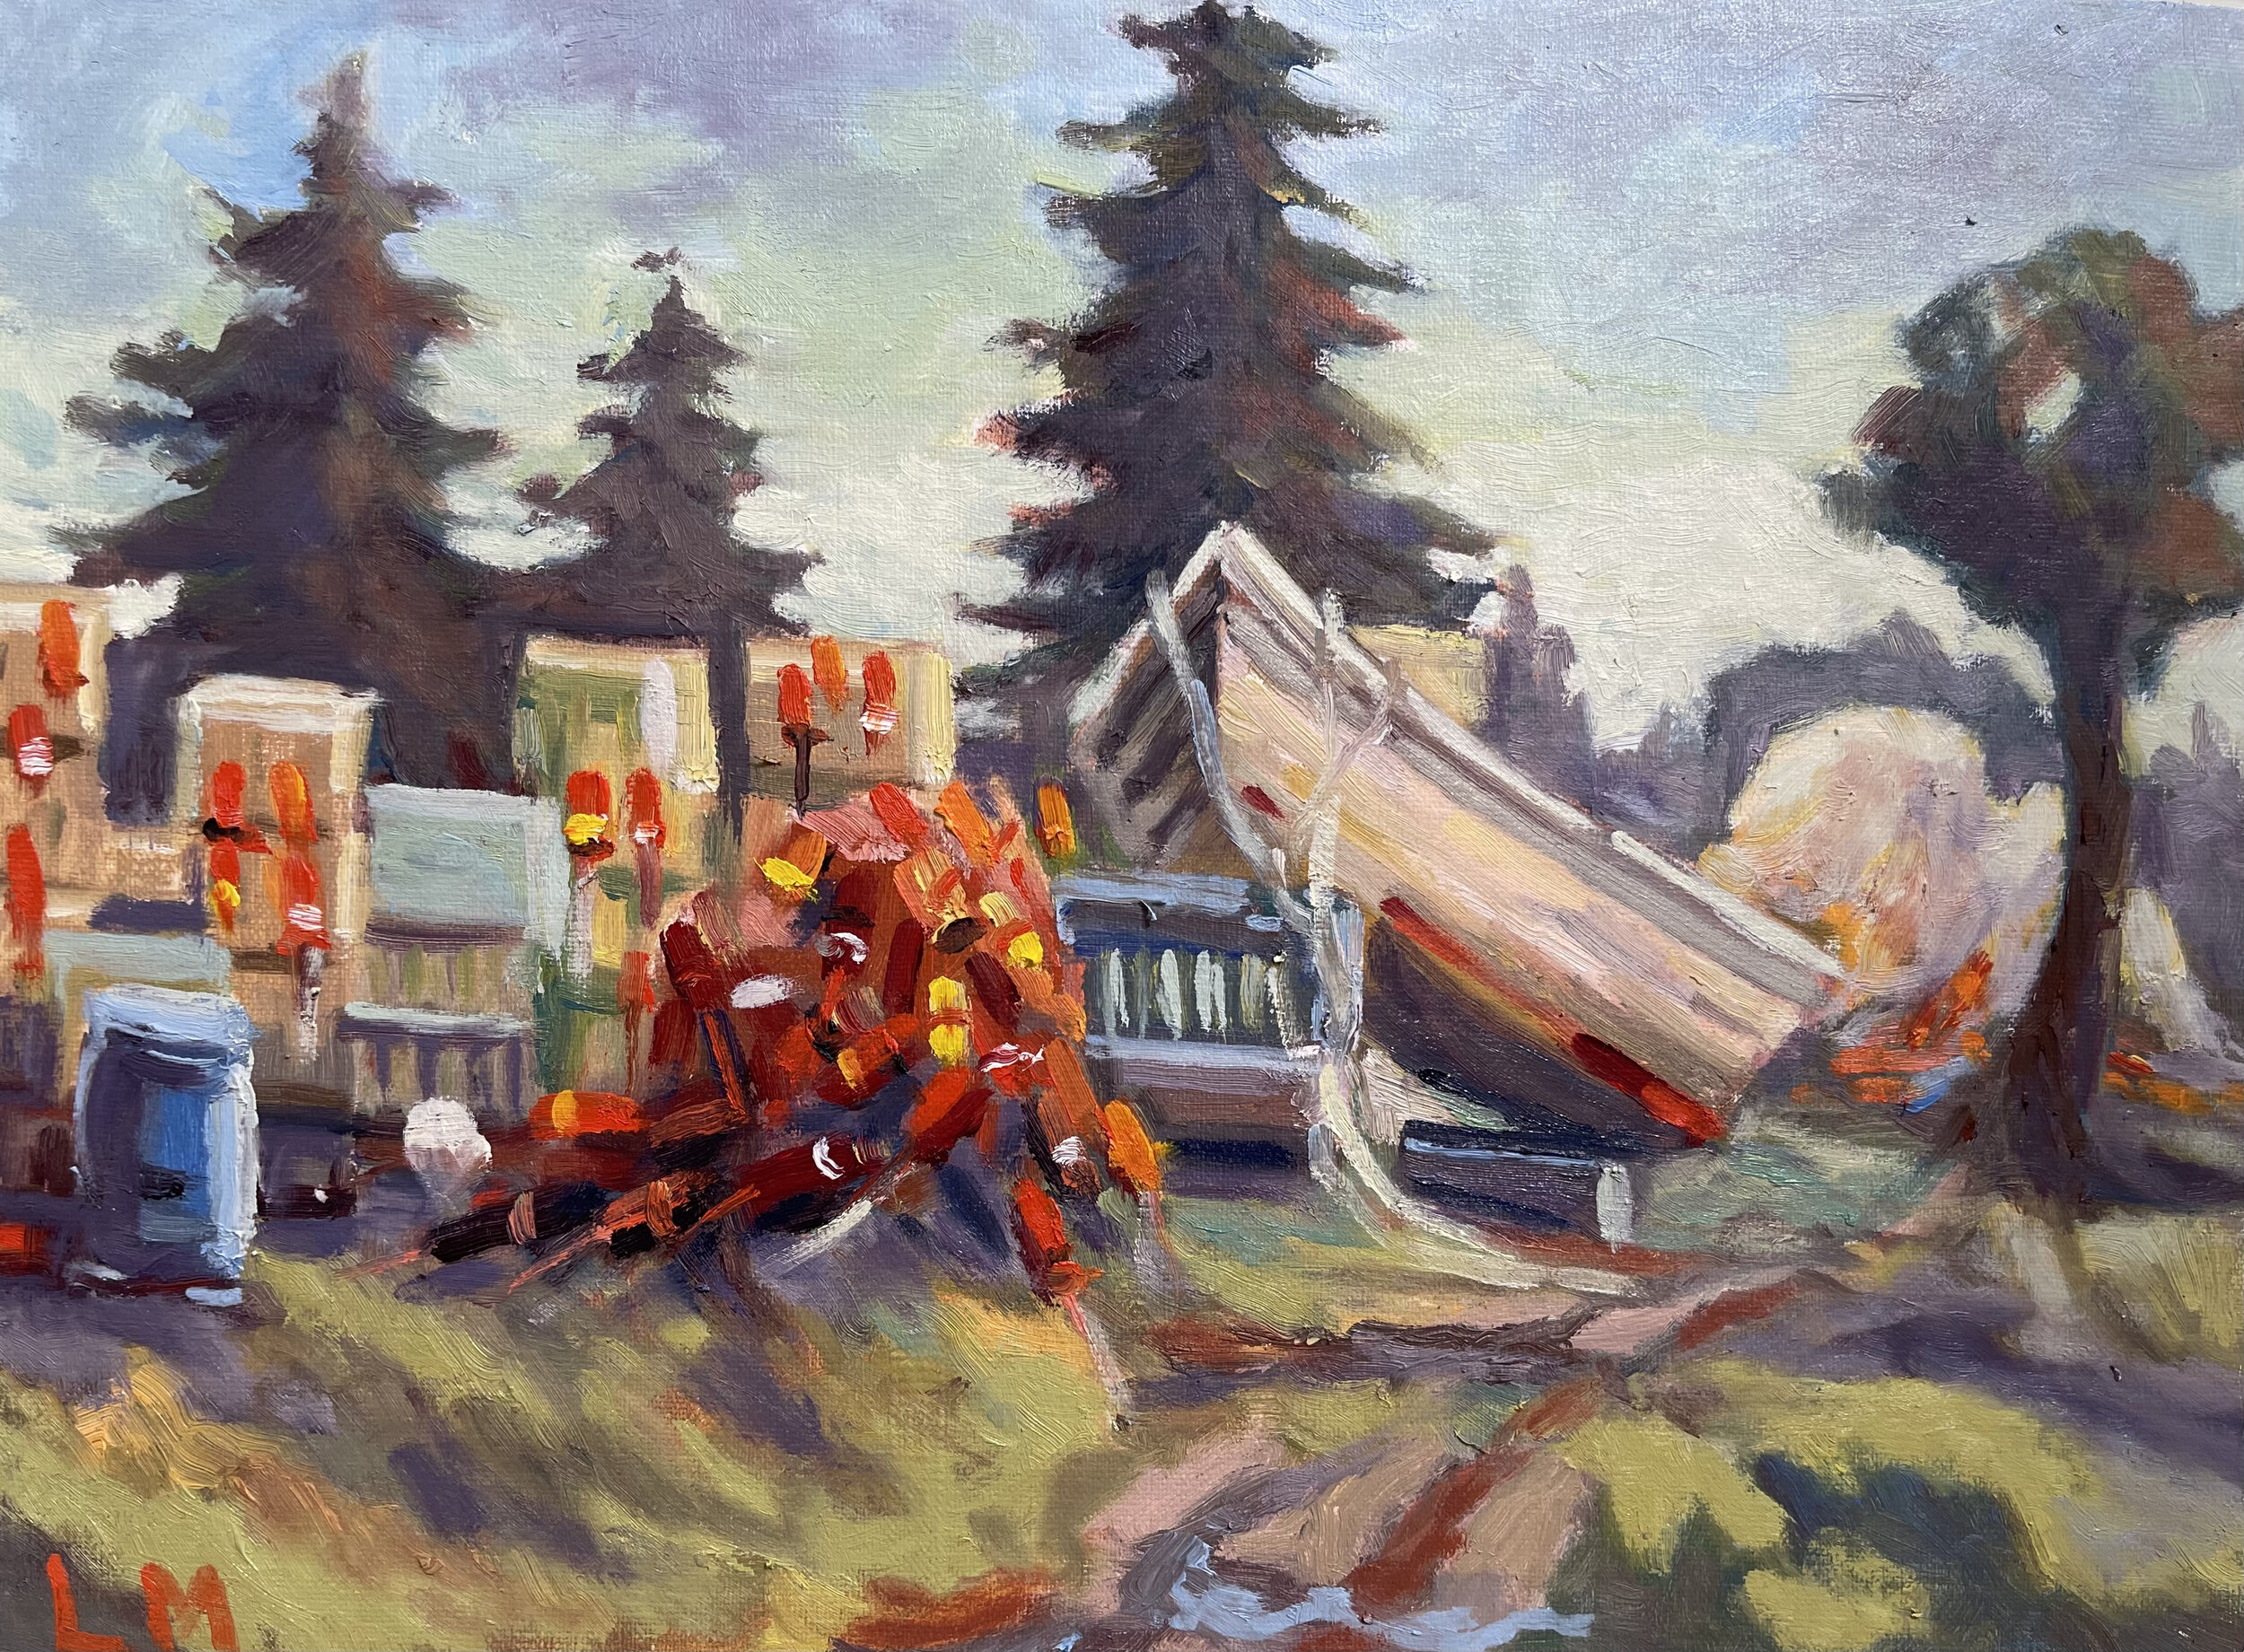 Yard Boat, oils, 9x12